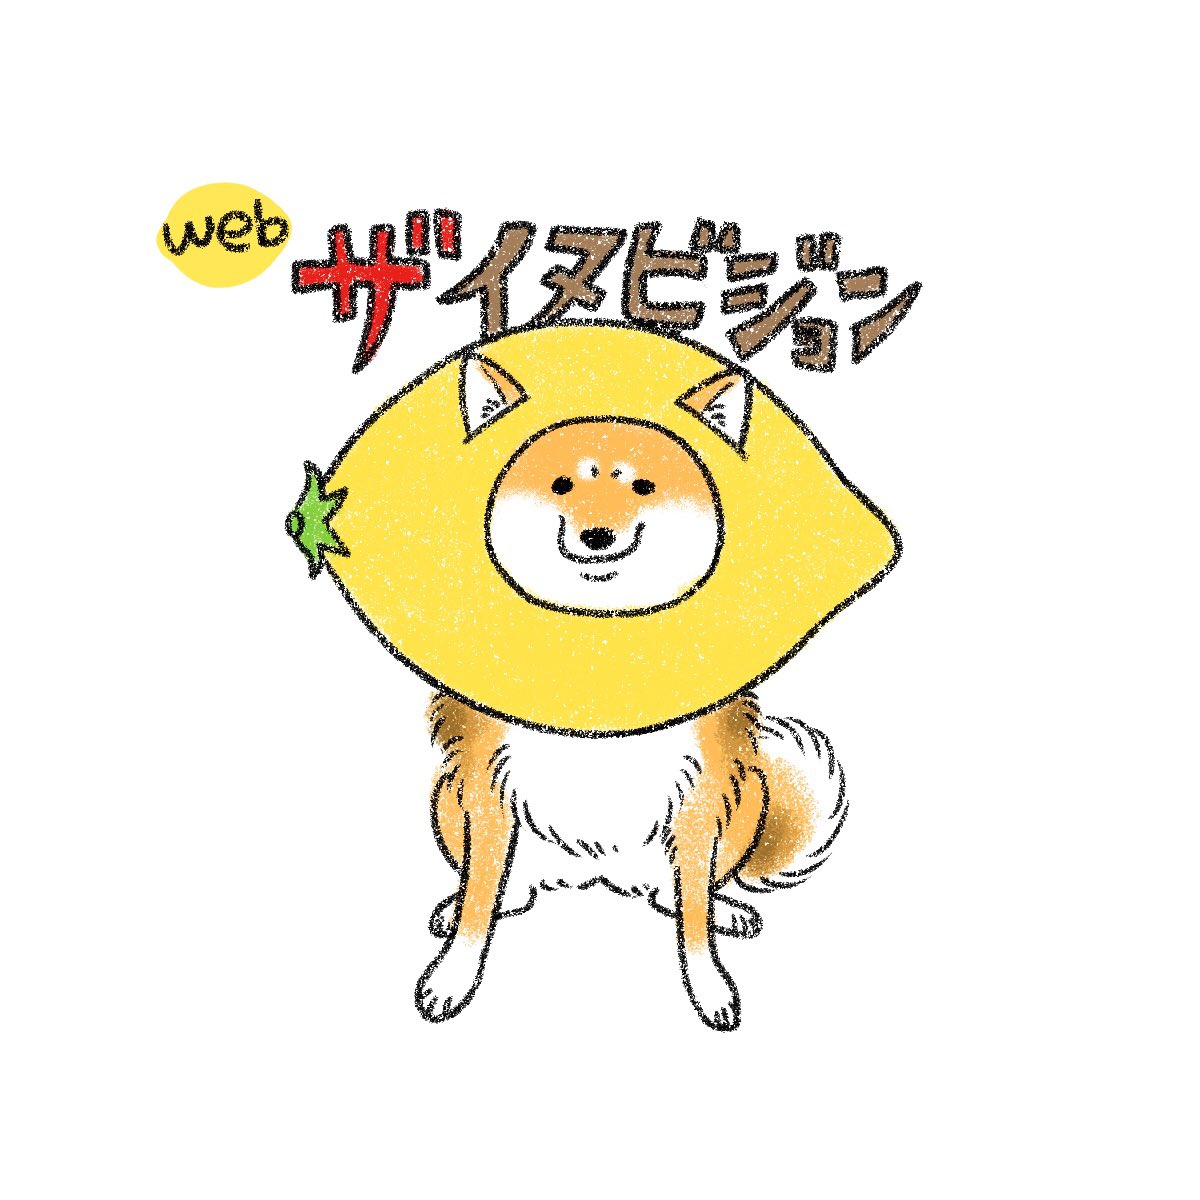 no humans dog shiba inu food white background animal focus fruit  illustration images